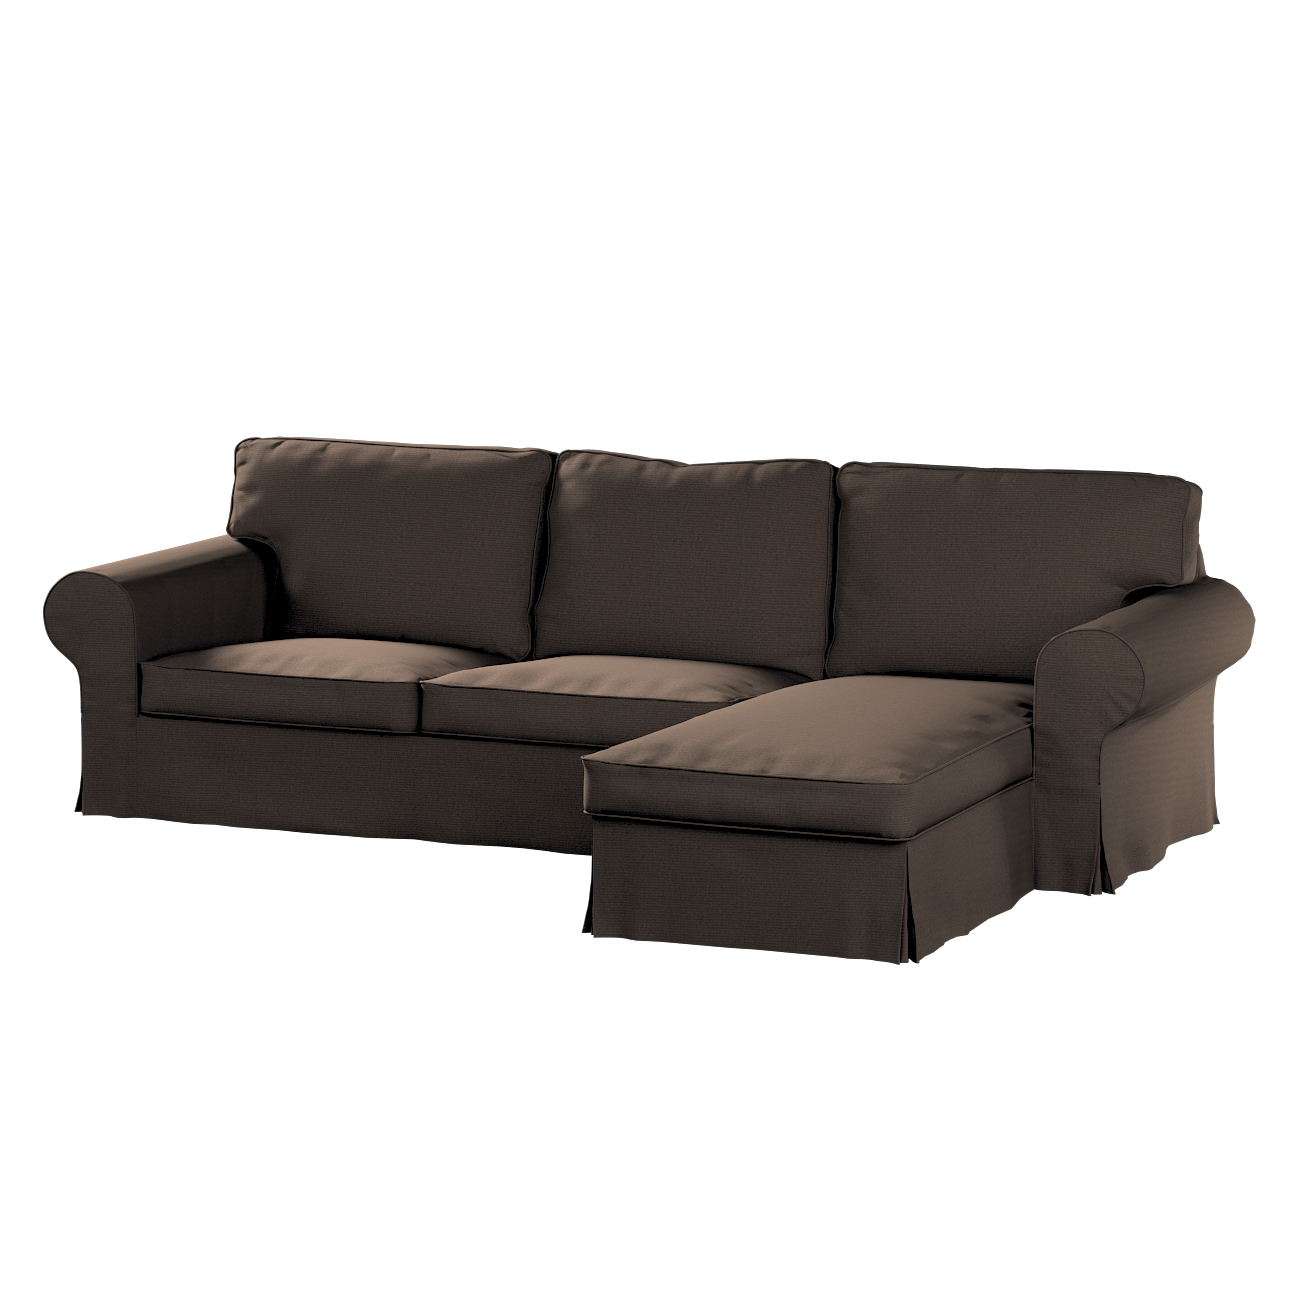 Bezug für Ektorp 2-Sitzer Sofa mit Recamiere, braun, Ektorp 2-Sitzer Sofabe günstig online kaufen